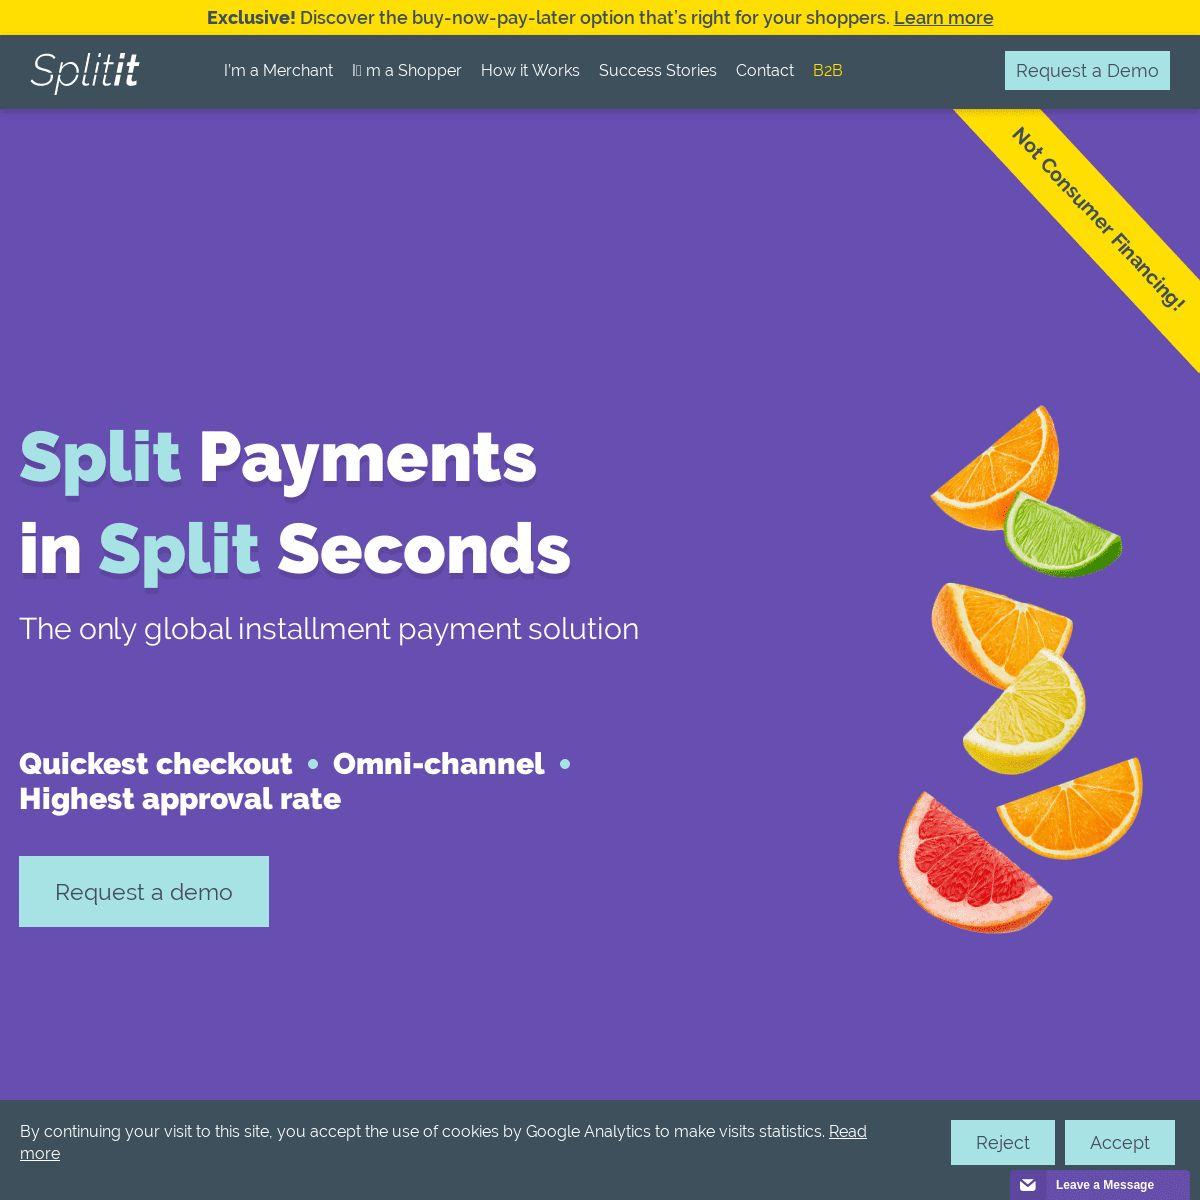 A complete backup of splitit.com